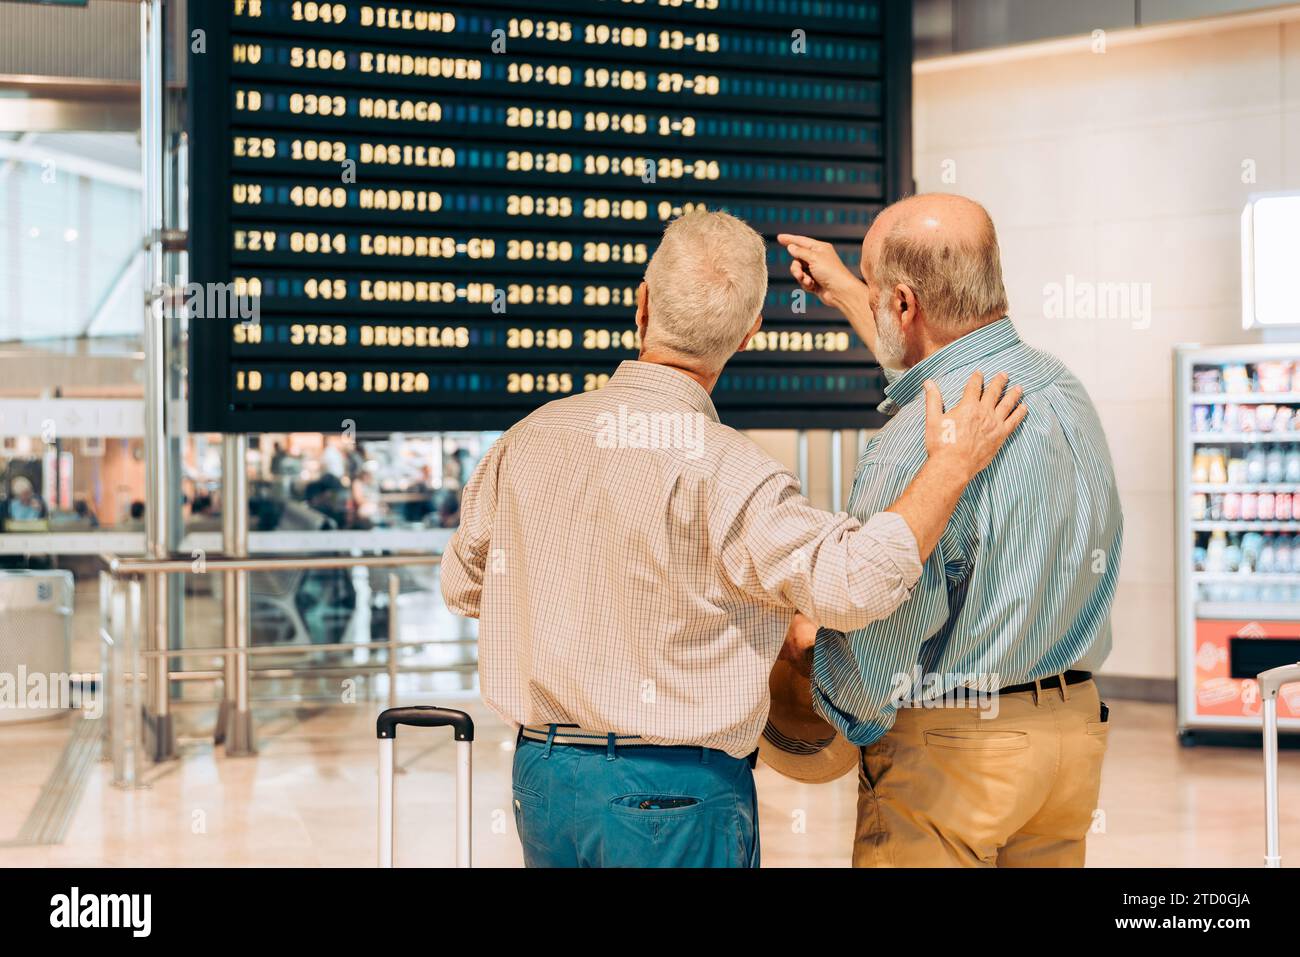 Rückansicht von anonymen älteren männlichen Touristen in ungezwungener Kleidung, die auf der Abflugplantafel am zeitgenössischen Flughafen während des Urlaubs schauen Stockfoto